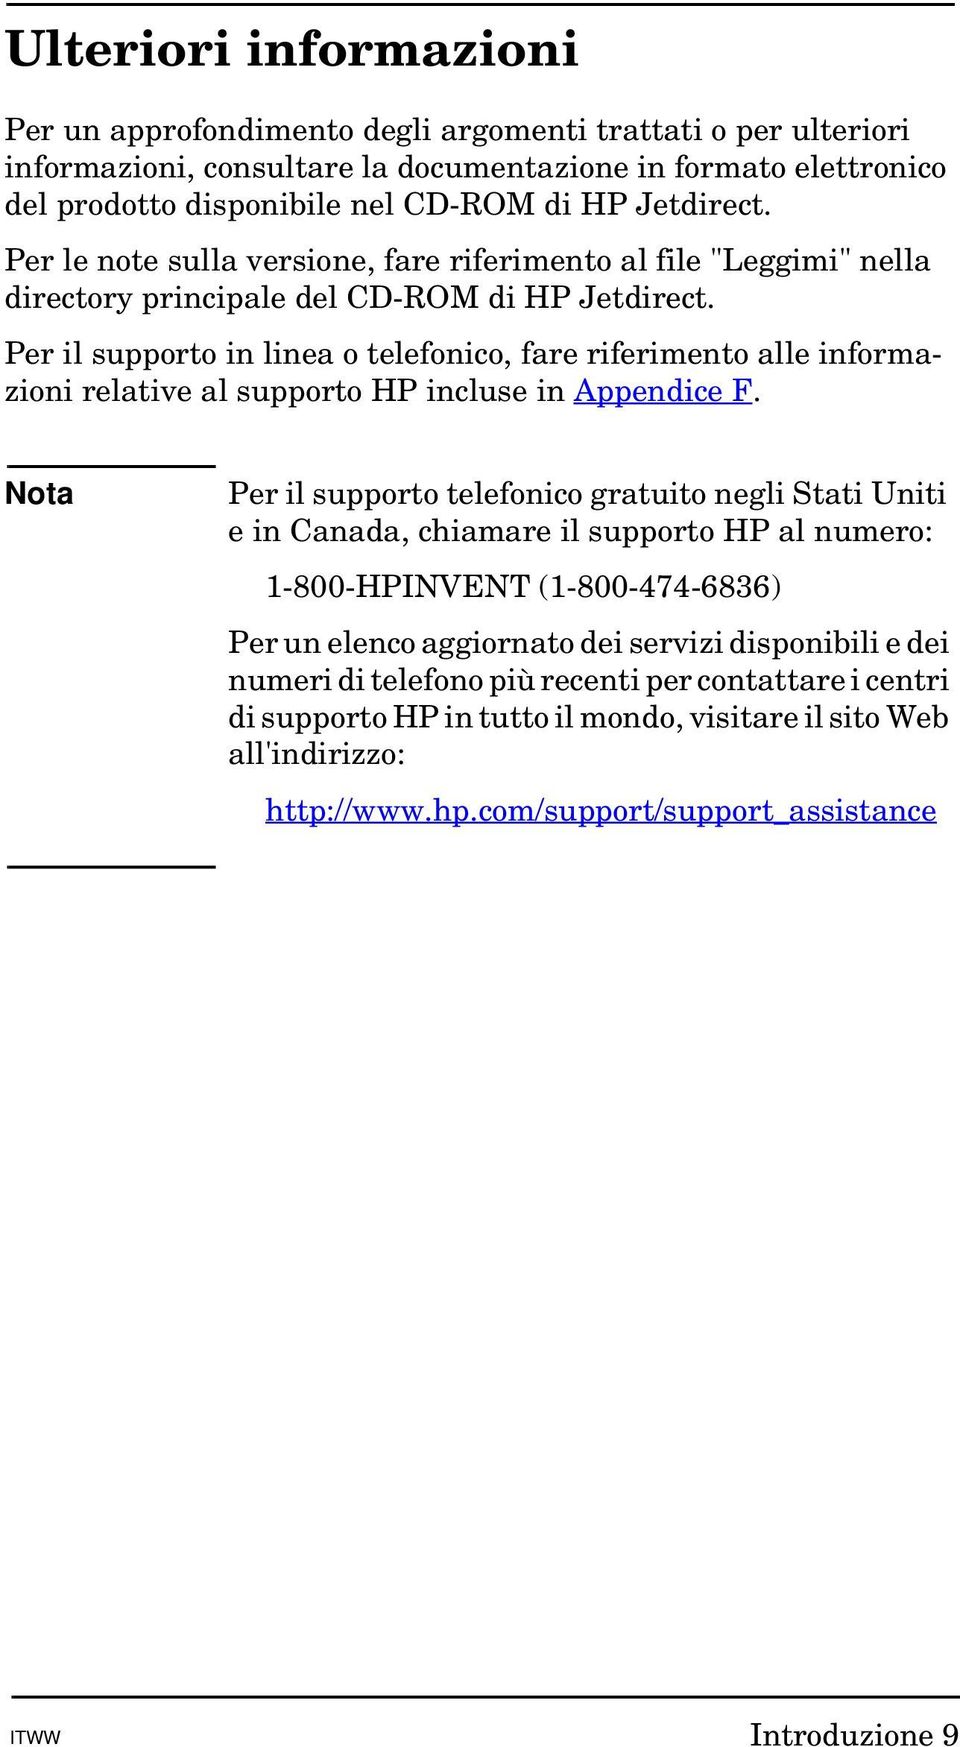 Per il supporto in linea o telefonico, fare riferimento alle informazioni relative al supporto HP incluse in Appendice F.